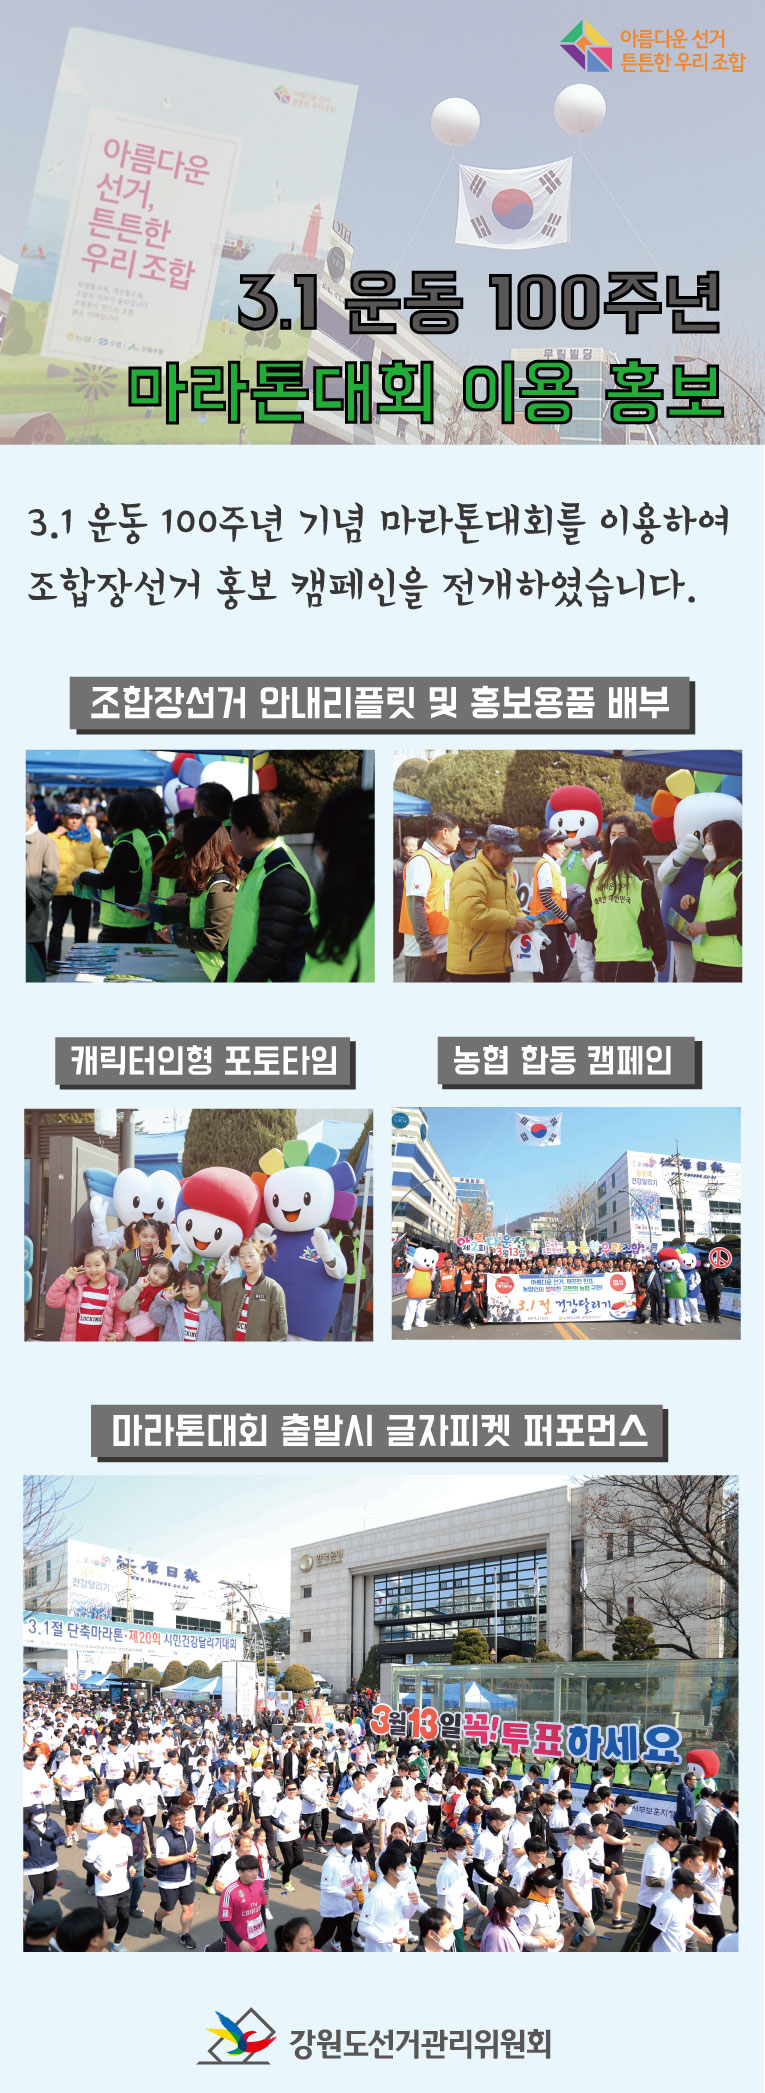 3월 1일 강원도선거관리위원회는 춘천시선거관리위원회와 함께 춘천시 강원일보사 앞에서 개최한 3.1운동 100주년 기념 마라톤대회를 이용하여 제2회 전국동시조합장선거 홍보 캠페인을 전개하였습니다